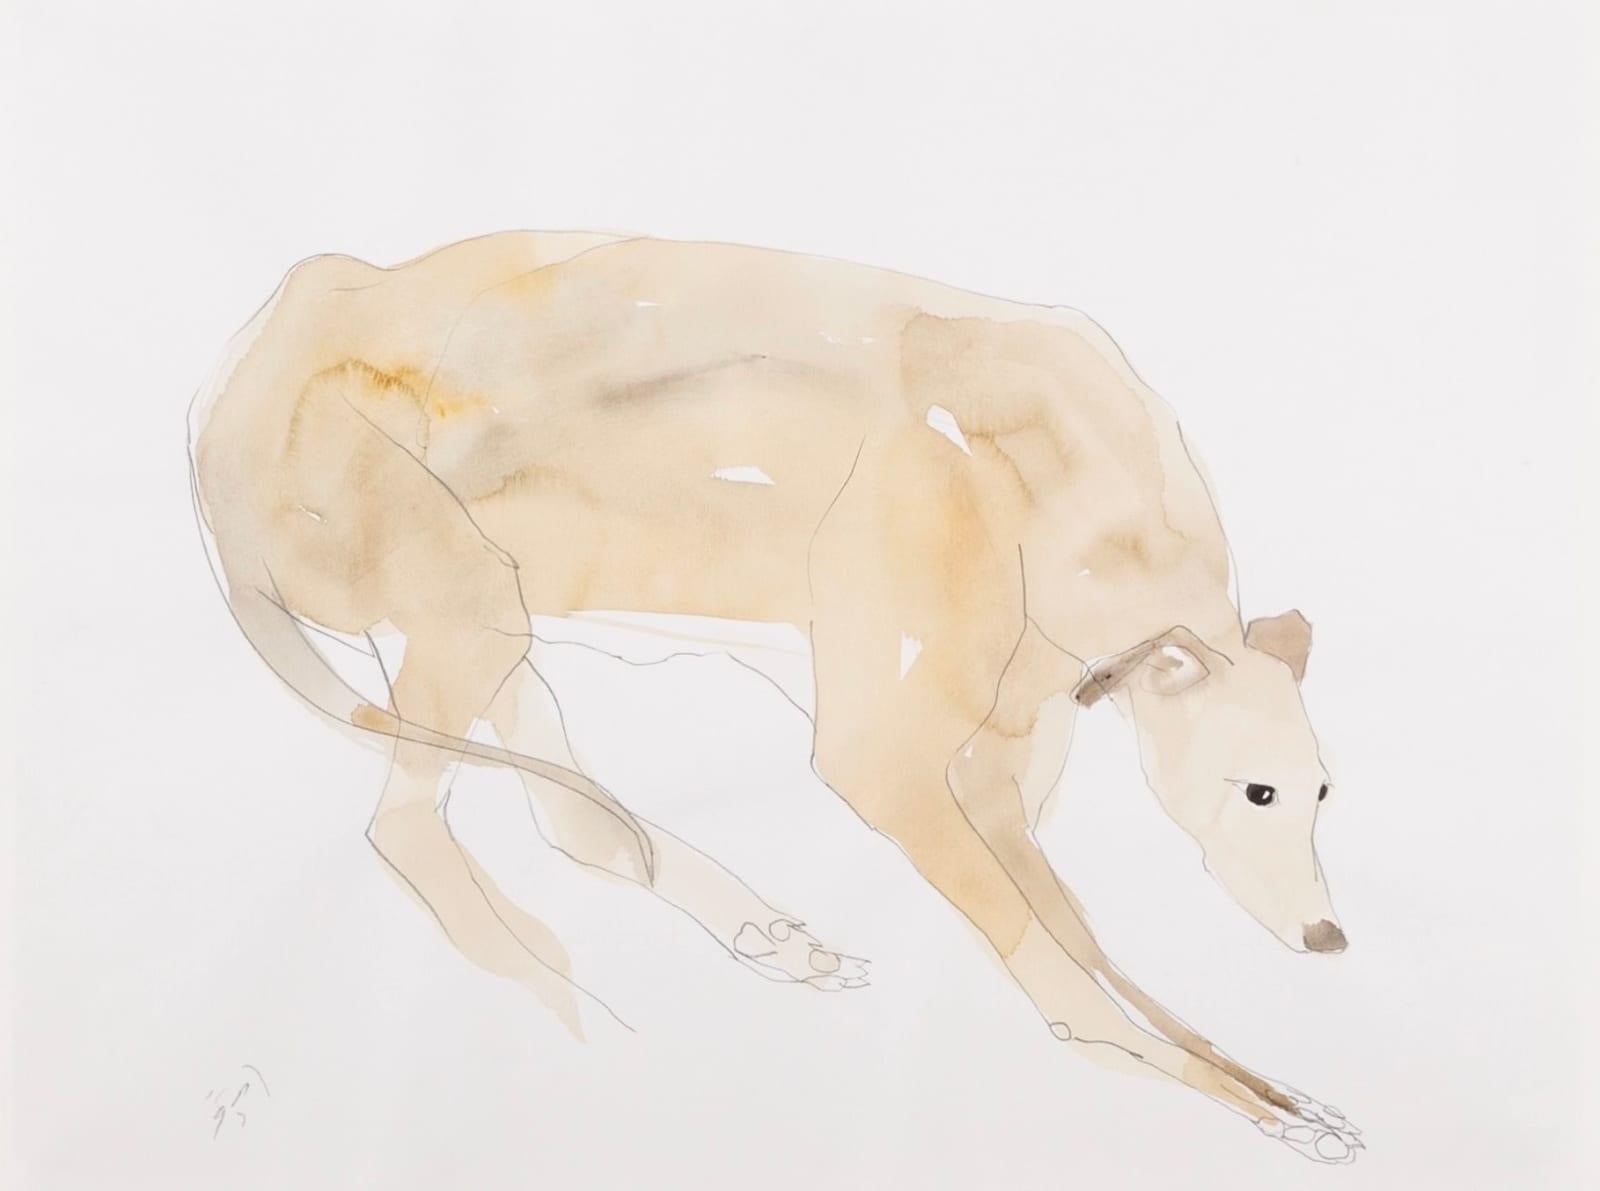 Long Dog I Peinture de Keith Purser Né en 1944, 1997

Informations complémentaires :
Médium : Aquarelle et crayon
Dimensions : 36 x 48 cm
14 1/8 x 18 7/8 in
Signé

Keith Purser vit et travaille à la limite de l'environnement désertique du plus grand